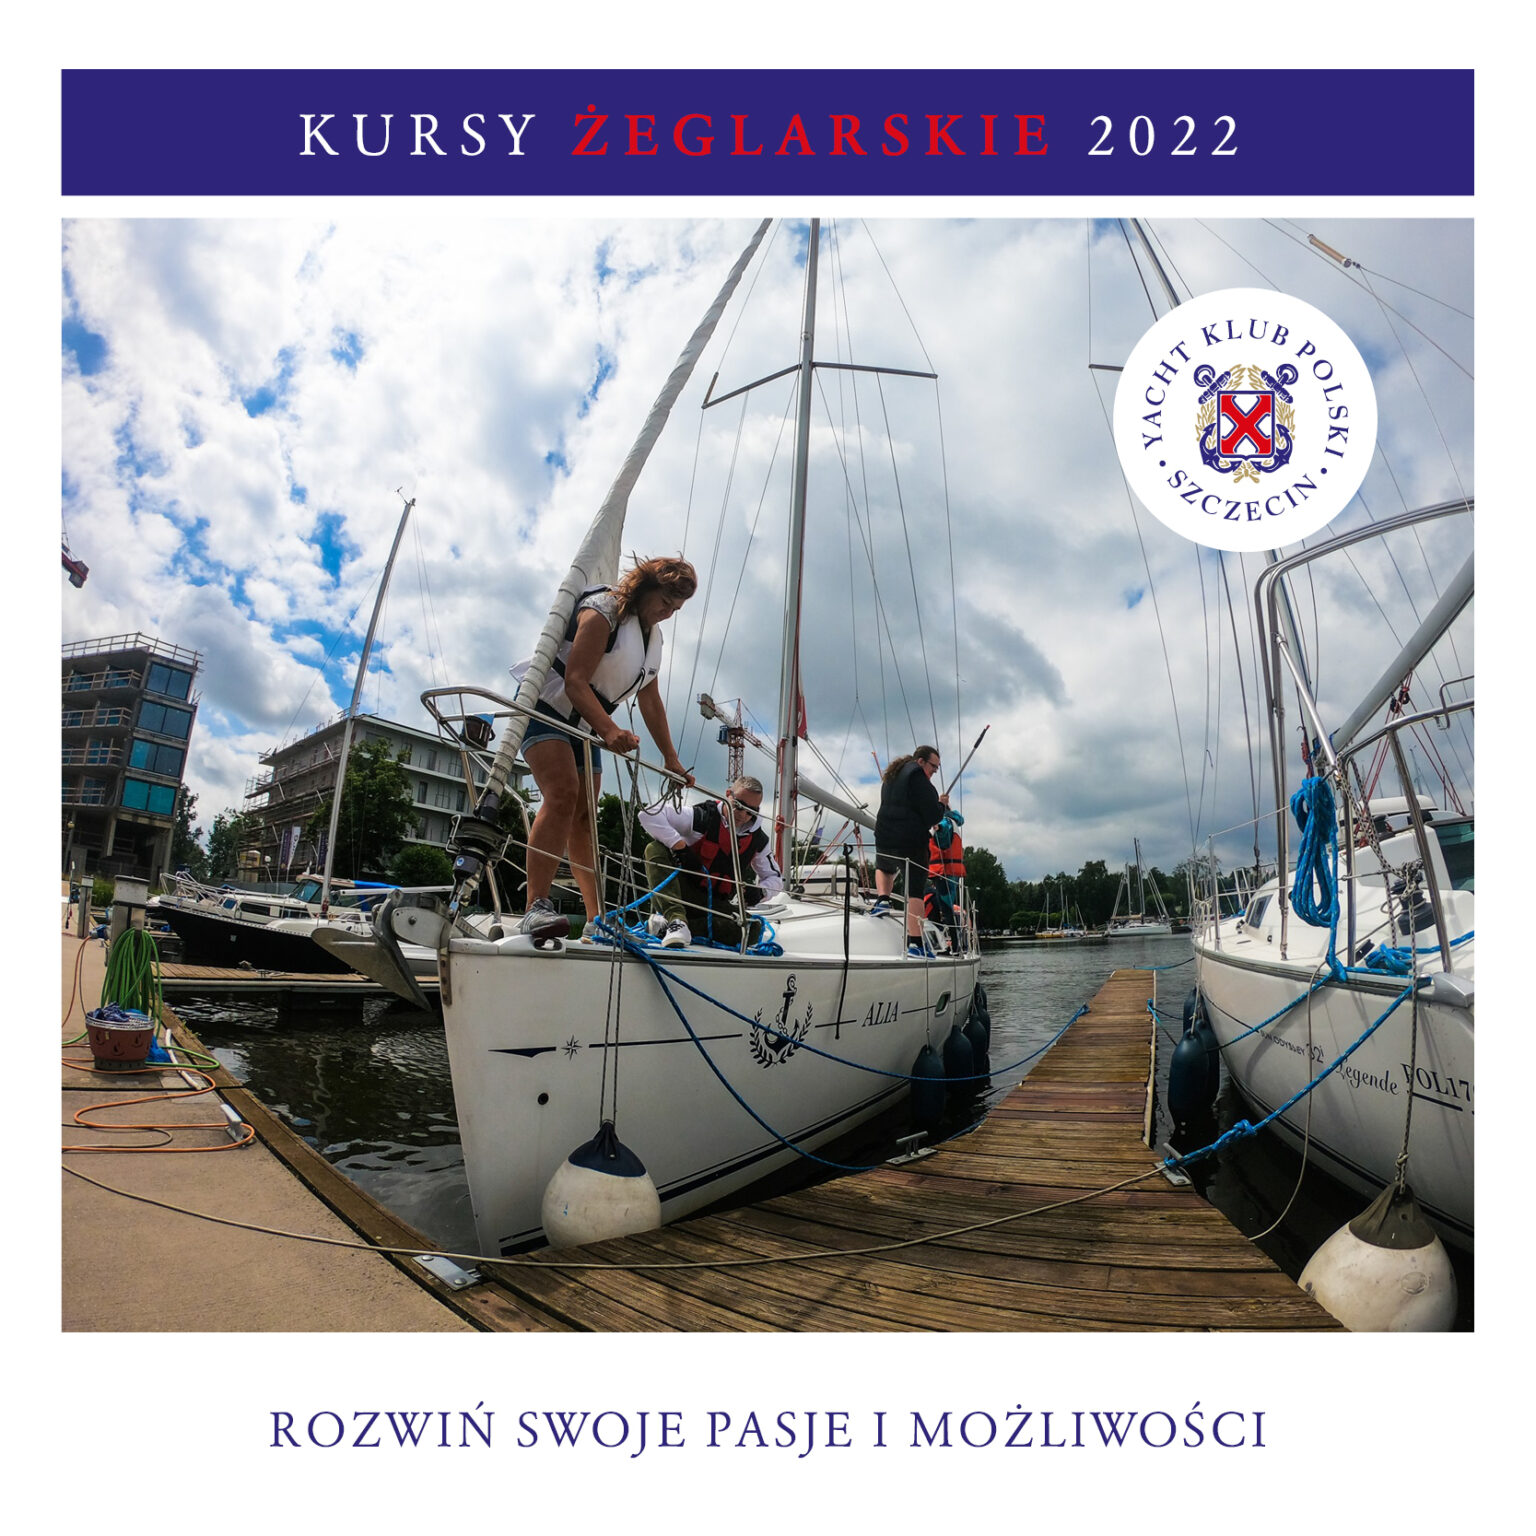 yacht klub polski zegrze